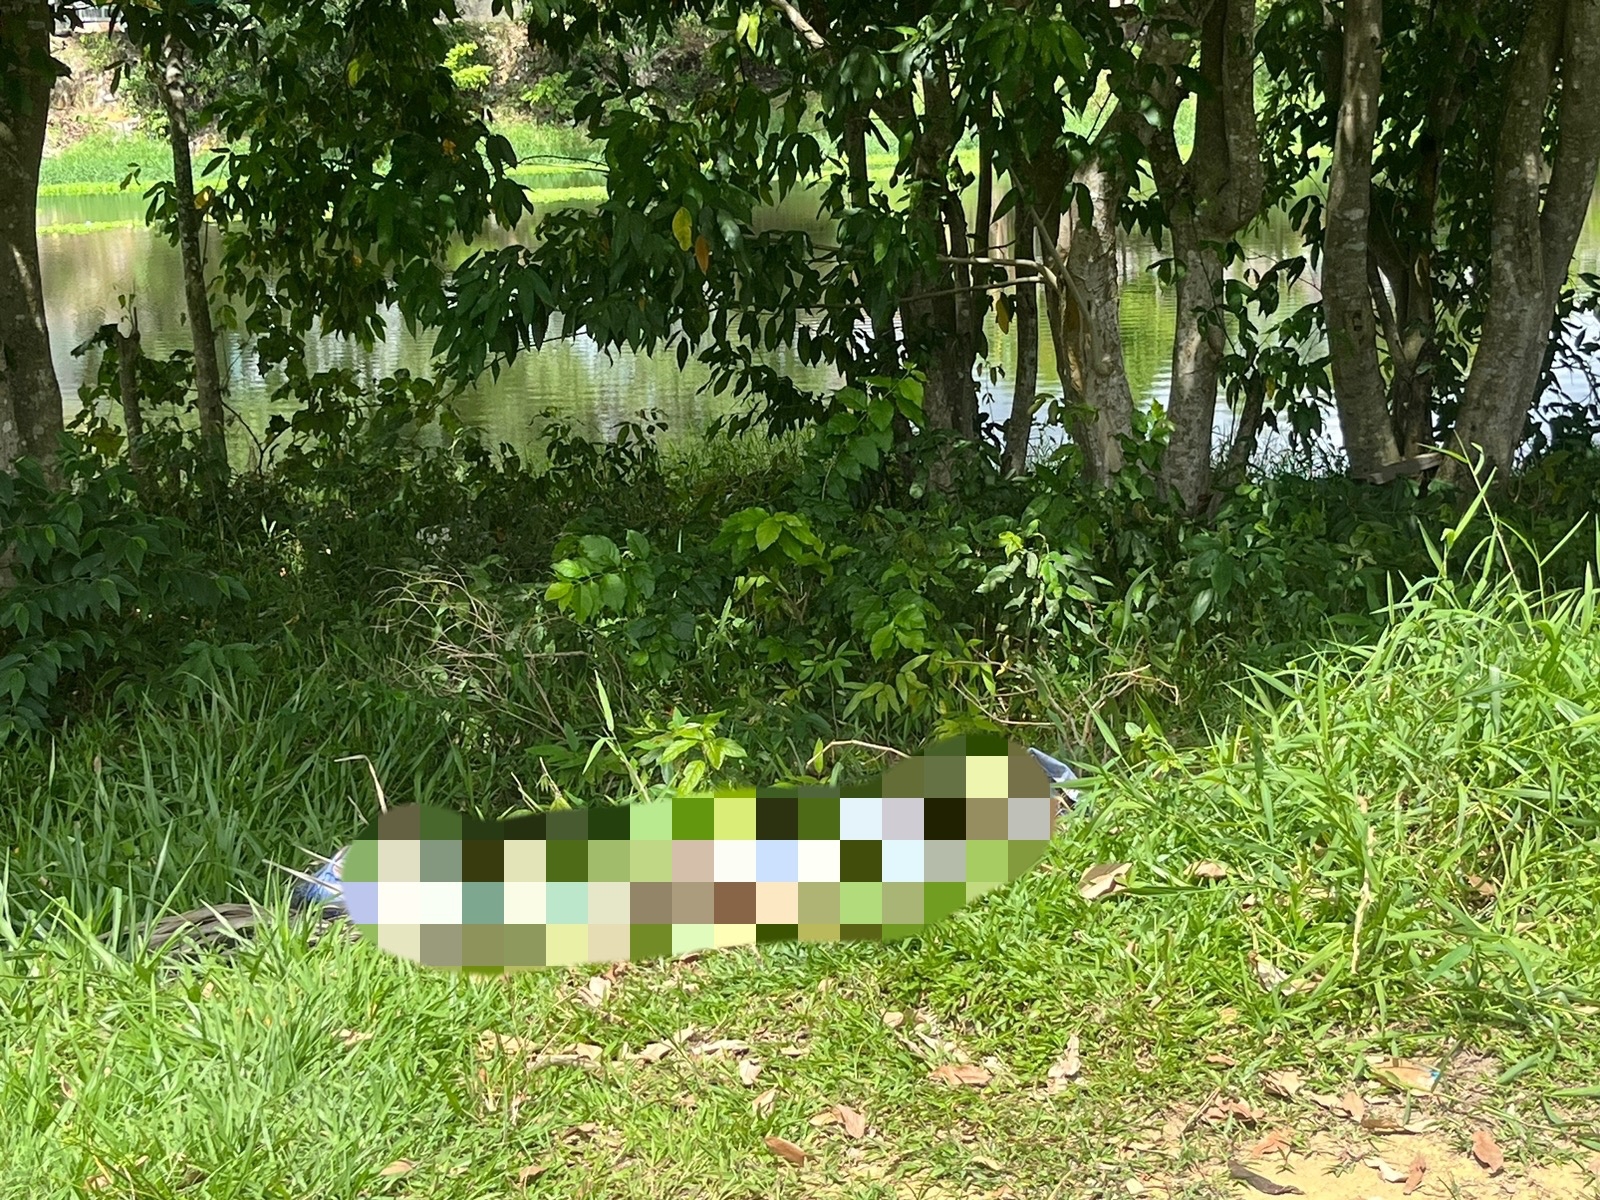 Corpo com marcas de tiros foi encontrado em área de mata - Foto: Reprodução/WhatsApp